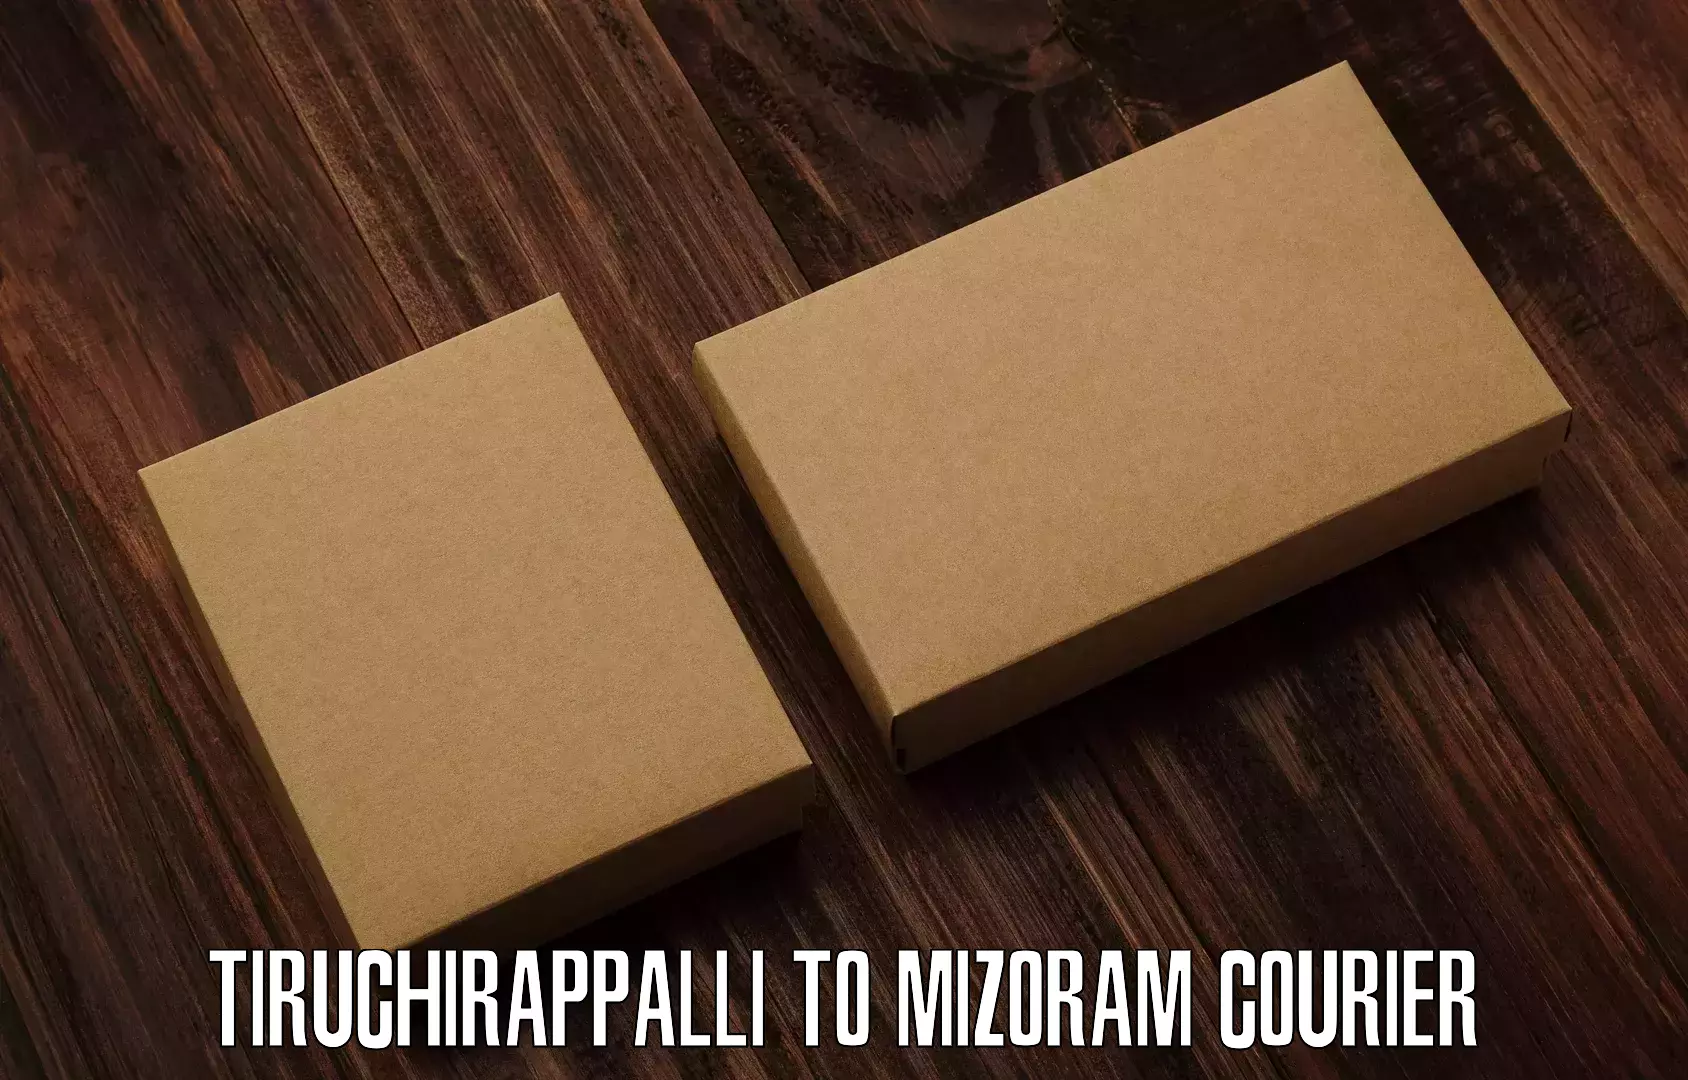 Courier service efficiency Tiruchirappalli to Aizawl